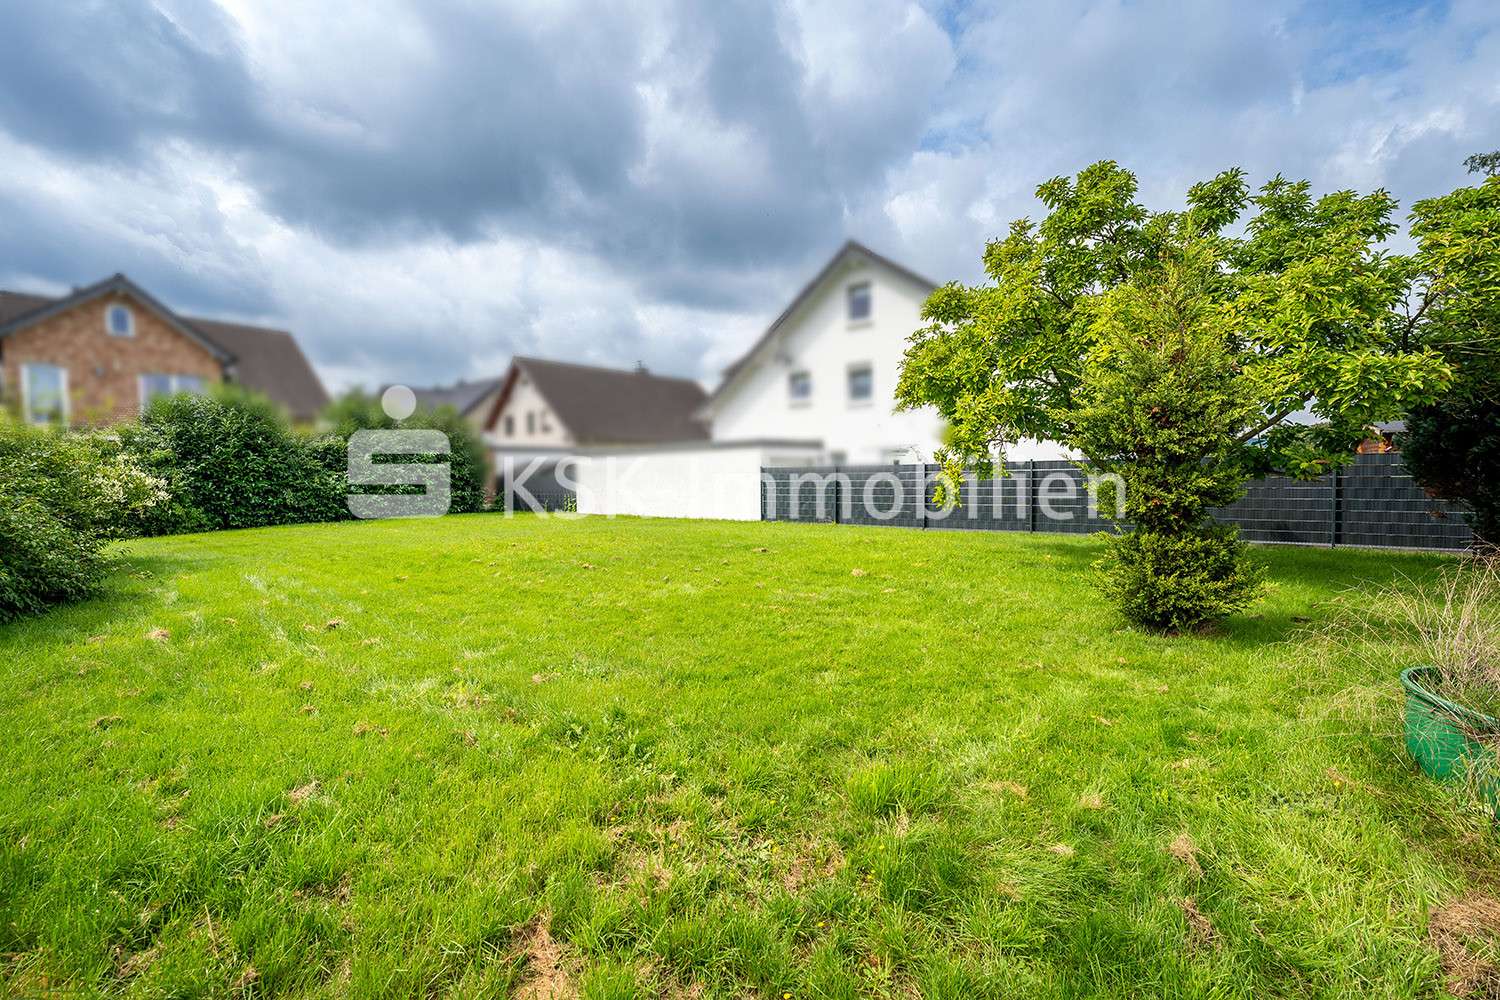 121762 Grundstück - Grundstück in 53721 Siegburg mit 560m² kaufen